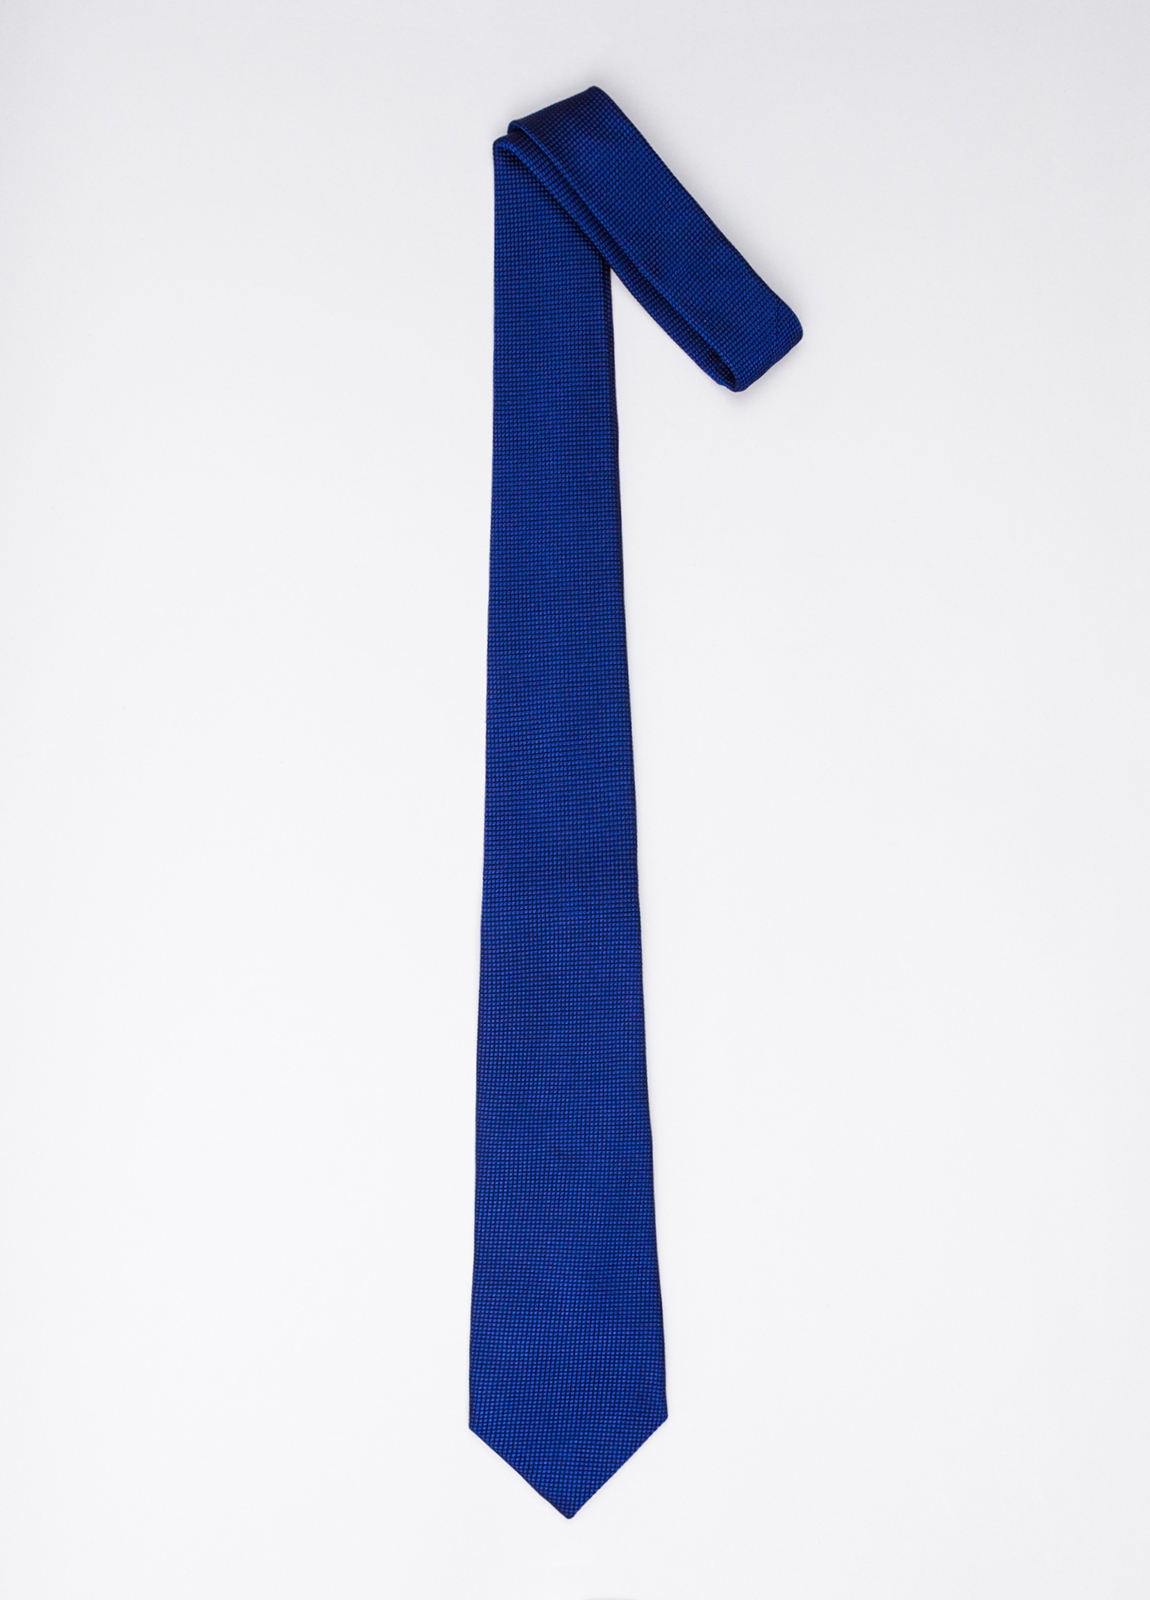 Corbata FUREST COLECCIÓN color azul tinta textura - Ítem1